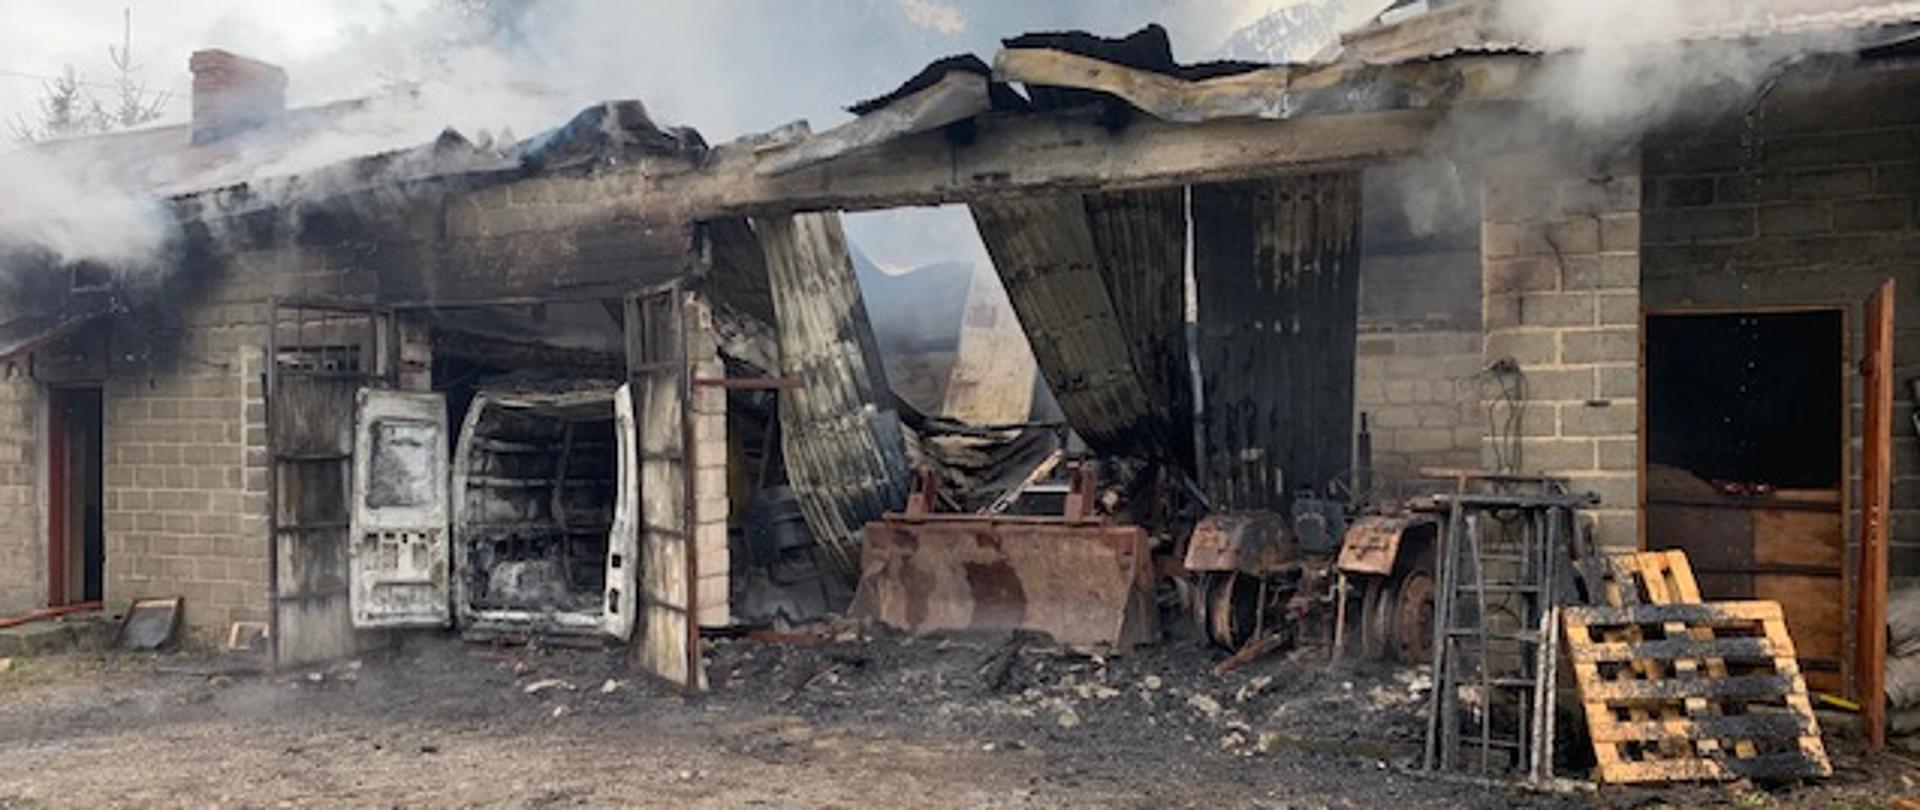 Na zdjęciu widać częściowo spalony budynek gospodarczy, w tle widać spalone pojazdy znajdujące się wewnątrz budynku